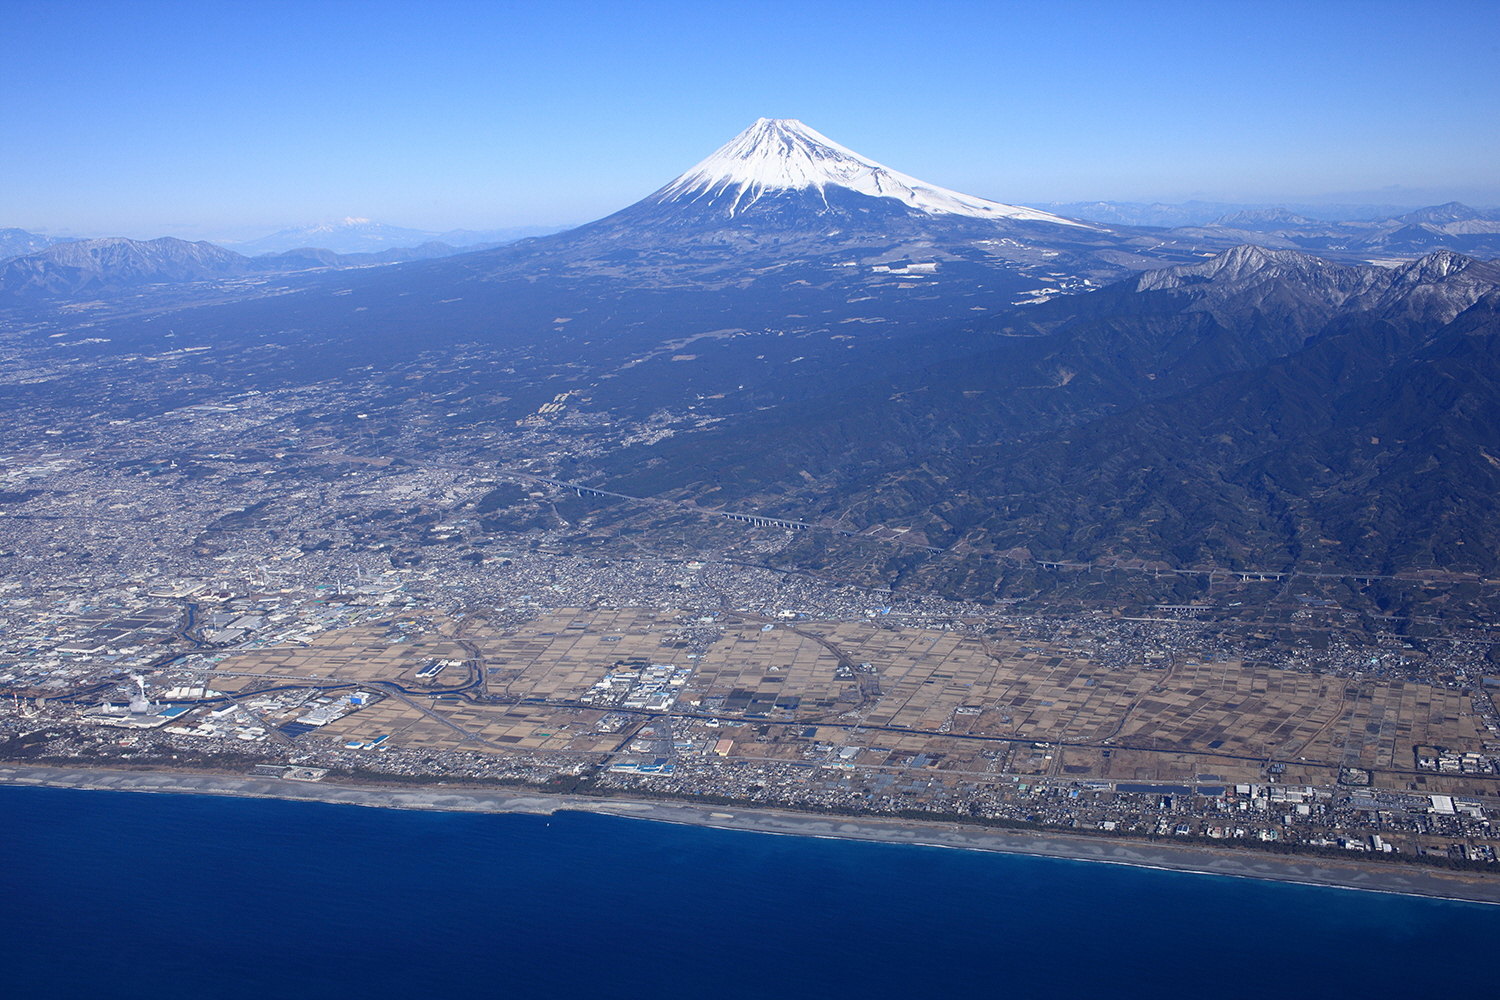 フリー写真素材集 | 静岡県富士市